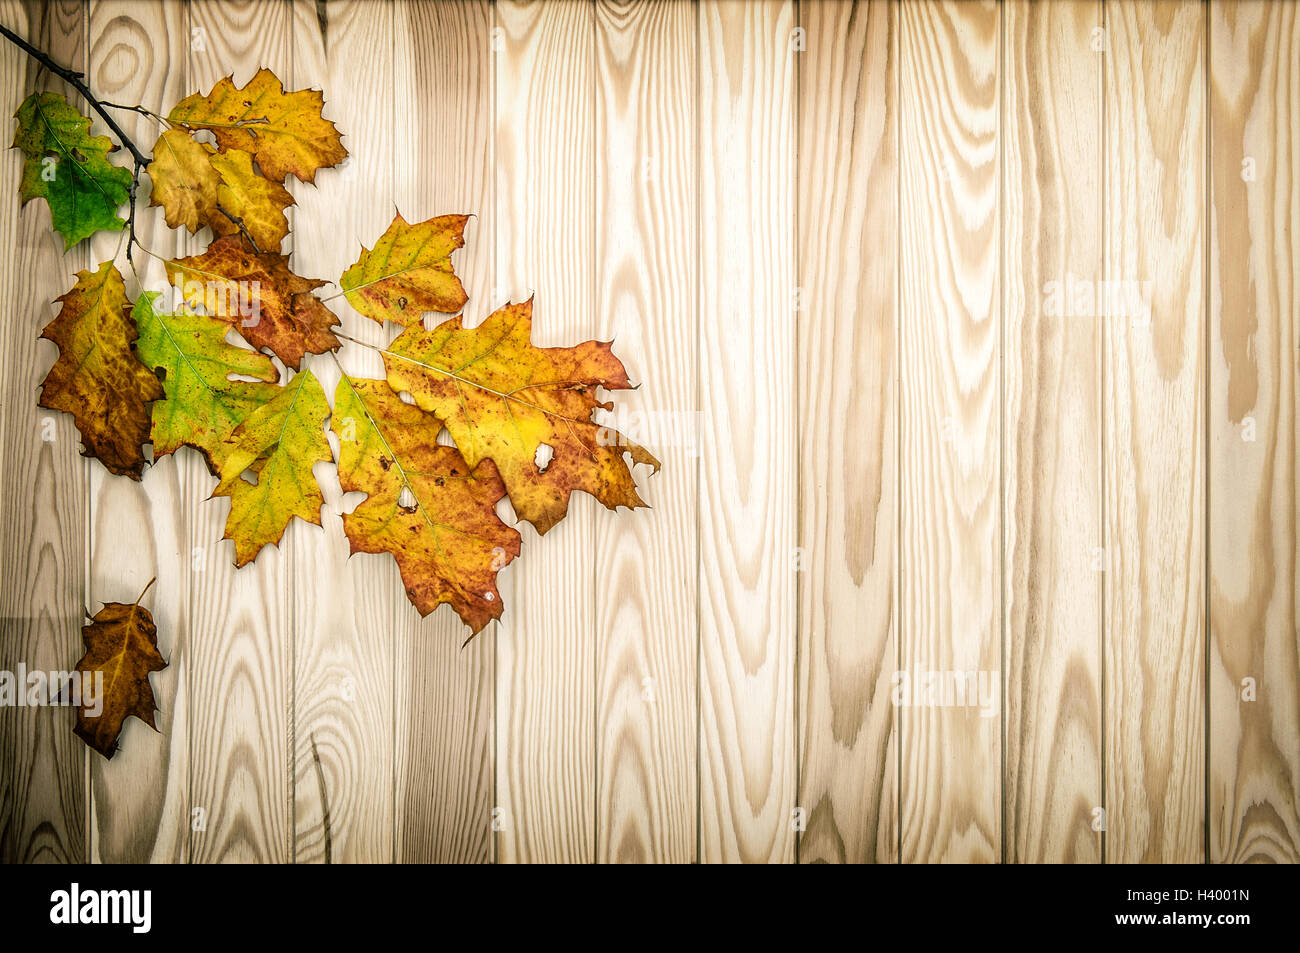 Herbstliche Ahornblätter auf hölzernen Hintergrund. Vintage-Stil getönten Bild Stockfoto